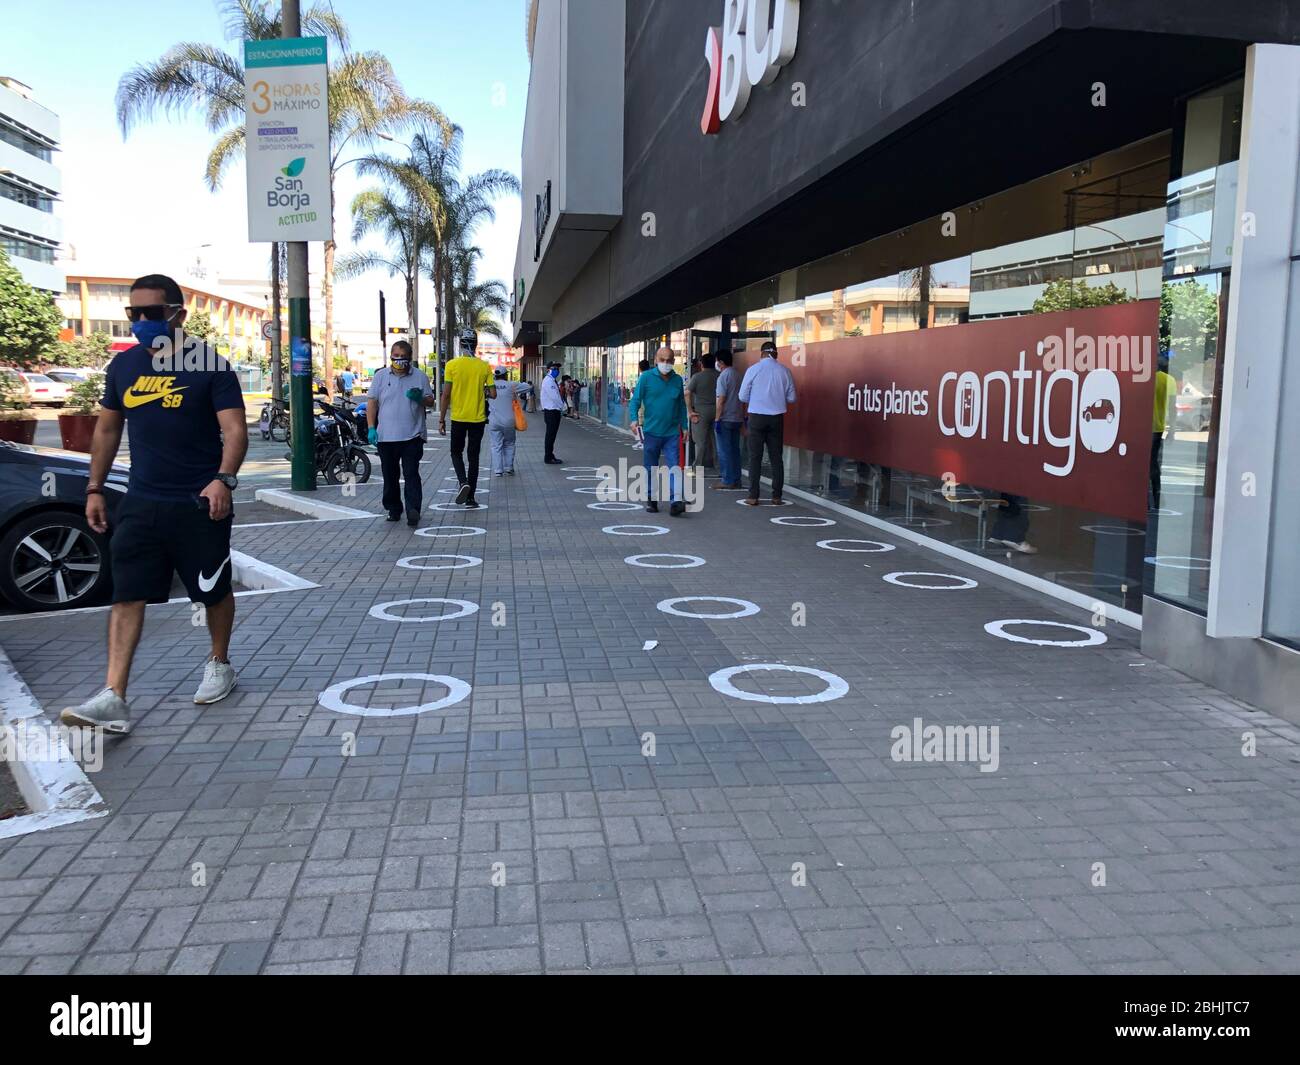 LIMA, PERÚ - 20 ABR 2020: Personas que respetan la distancia física y social en la cuarentena llevada a cabo en la ciudad de Lima, Perú Foto de stock